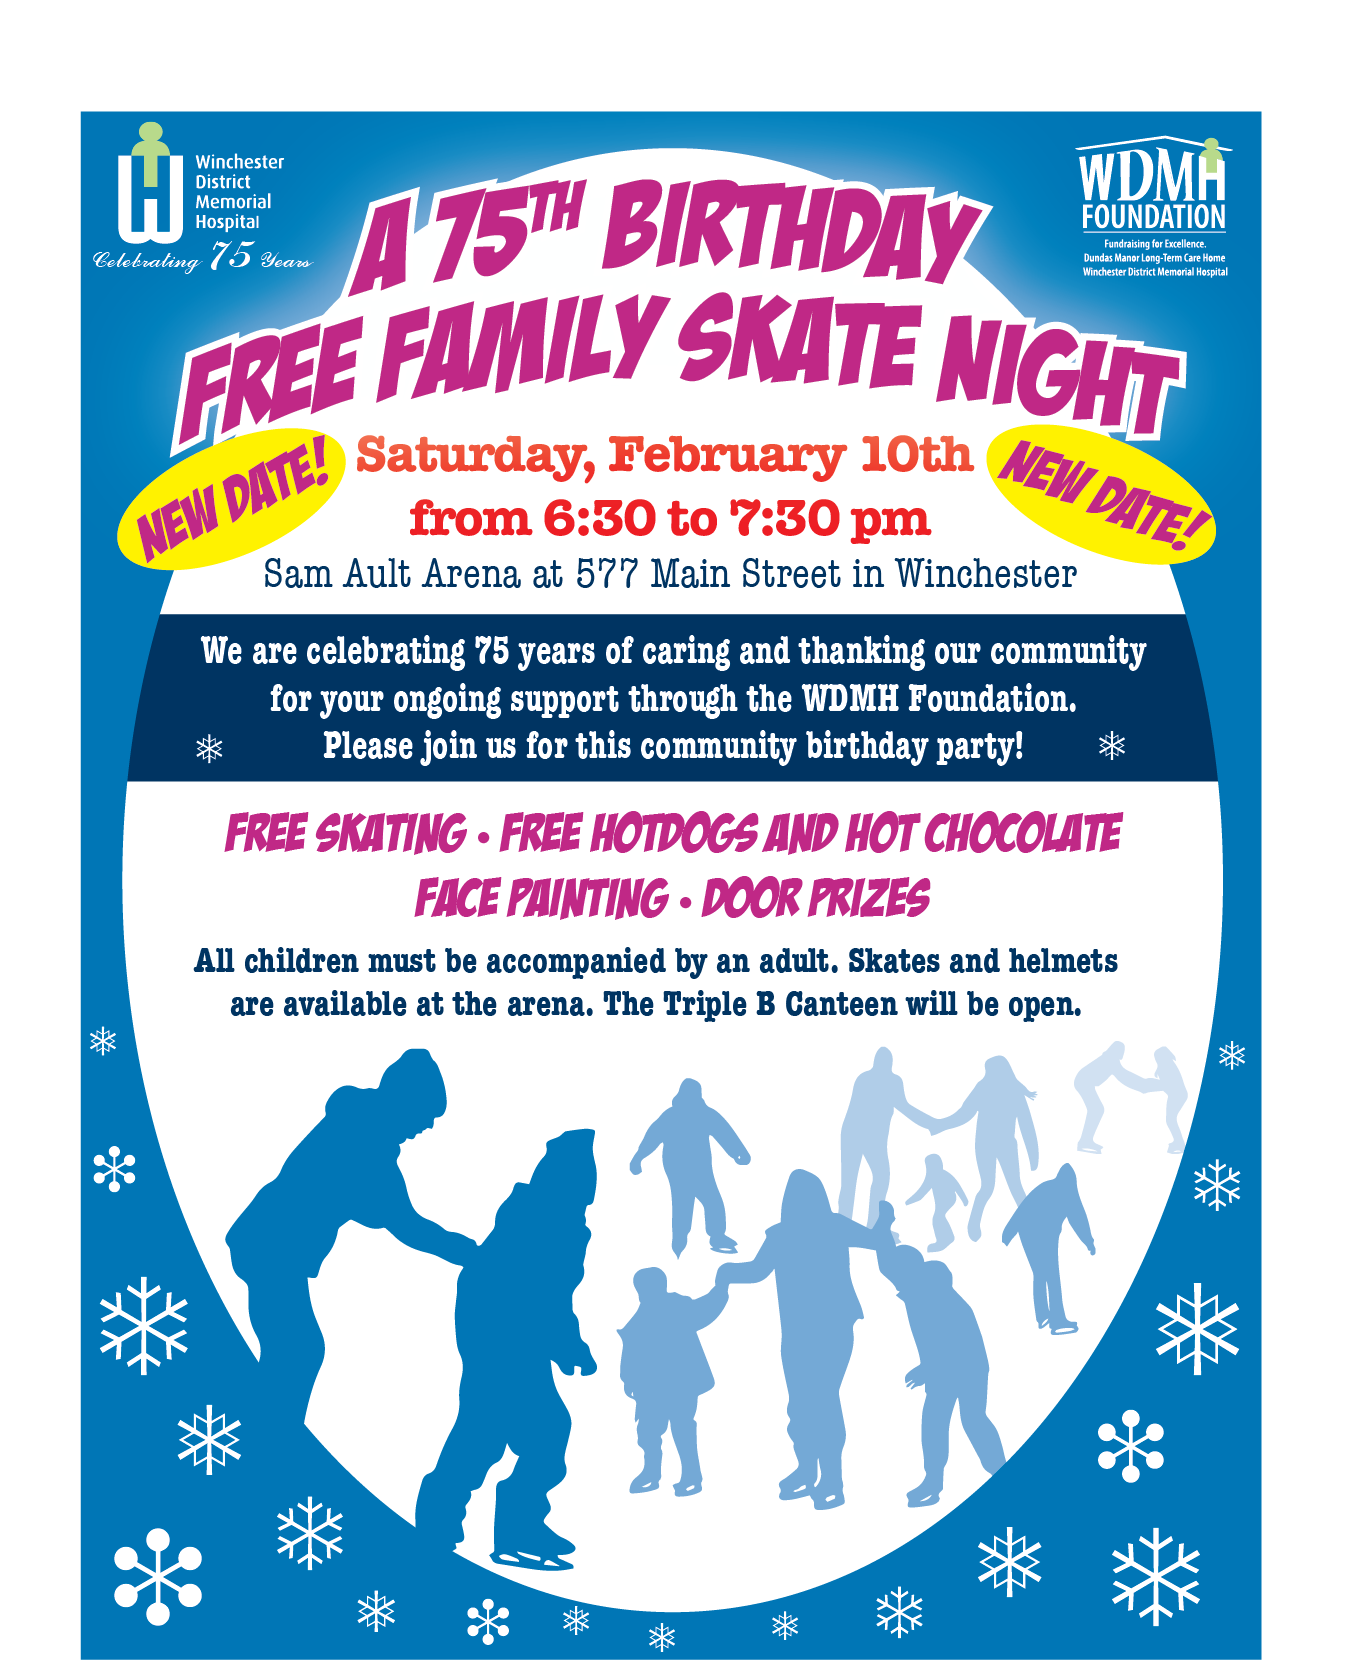 poster of family skate night details